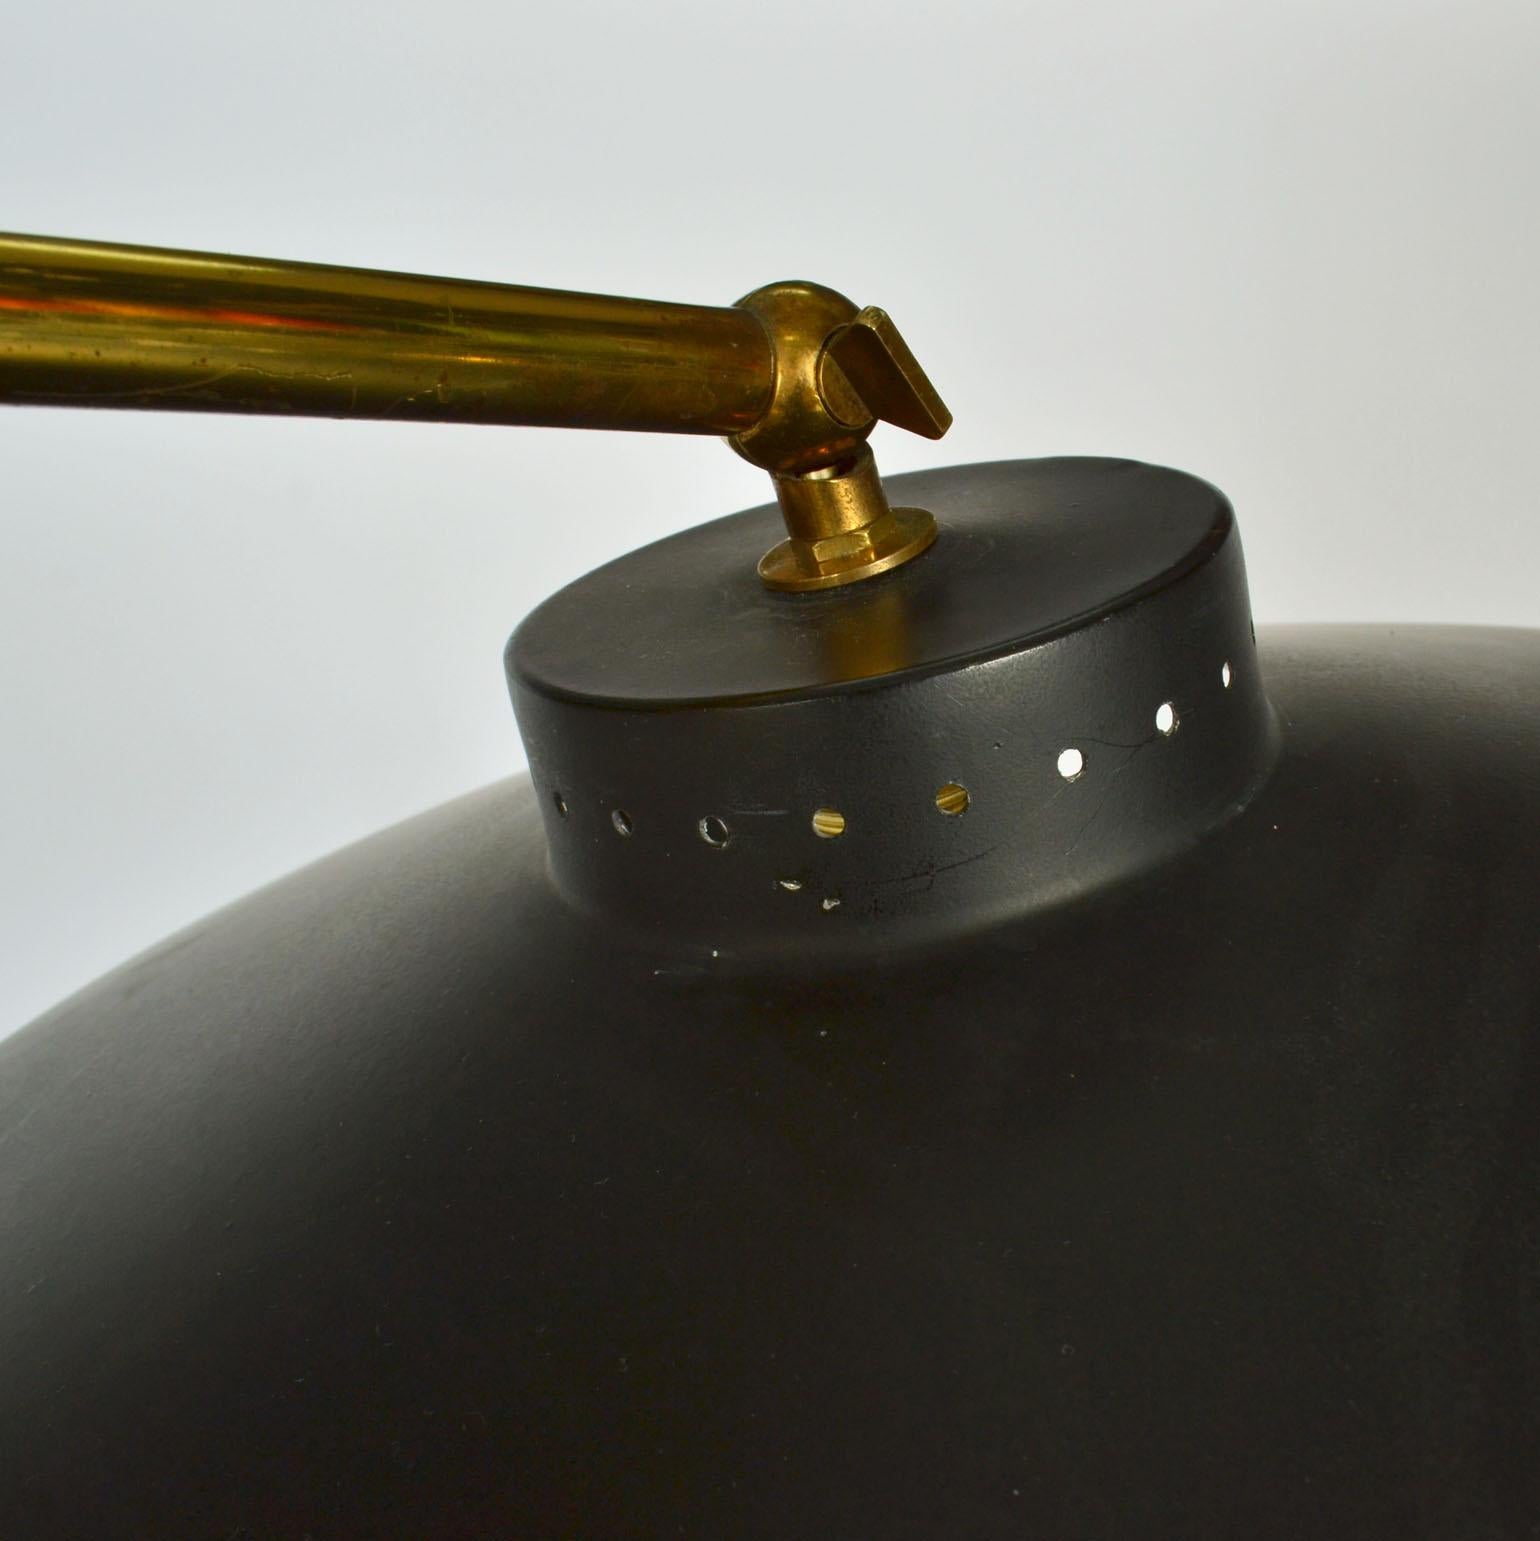 Italian Swing Arm Brass Floor Lamp, Original Black Shade, 1950's Stilnovo Style For Sale 7